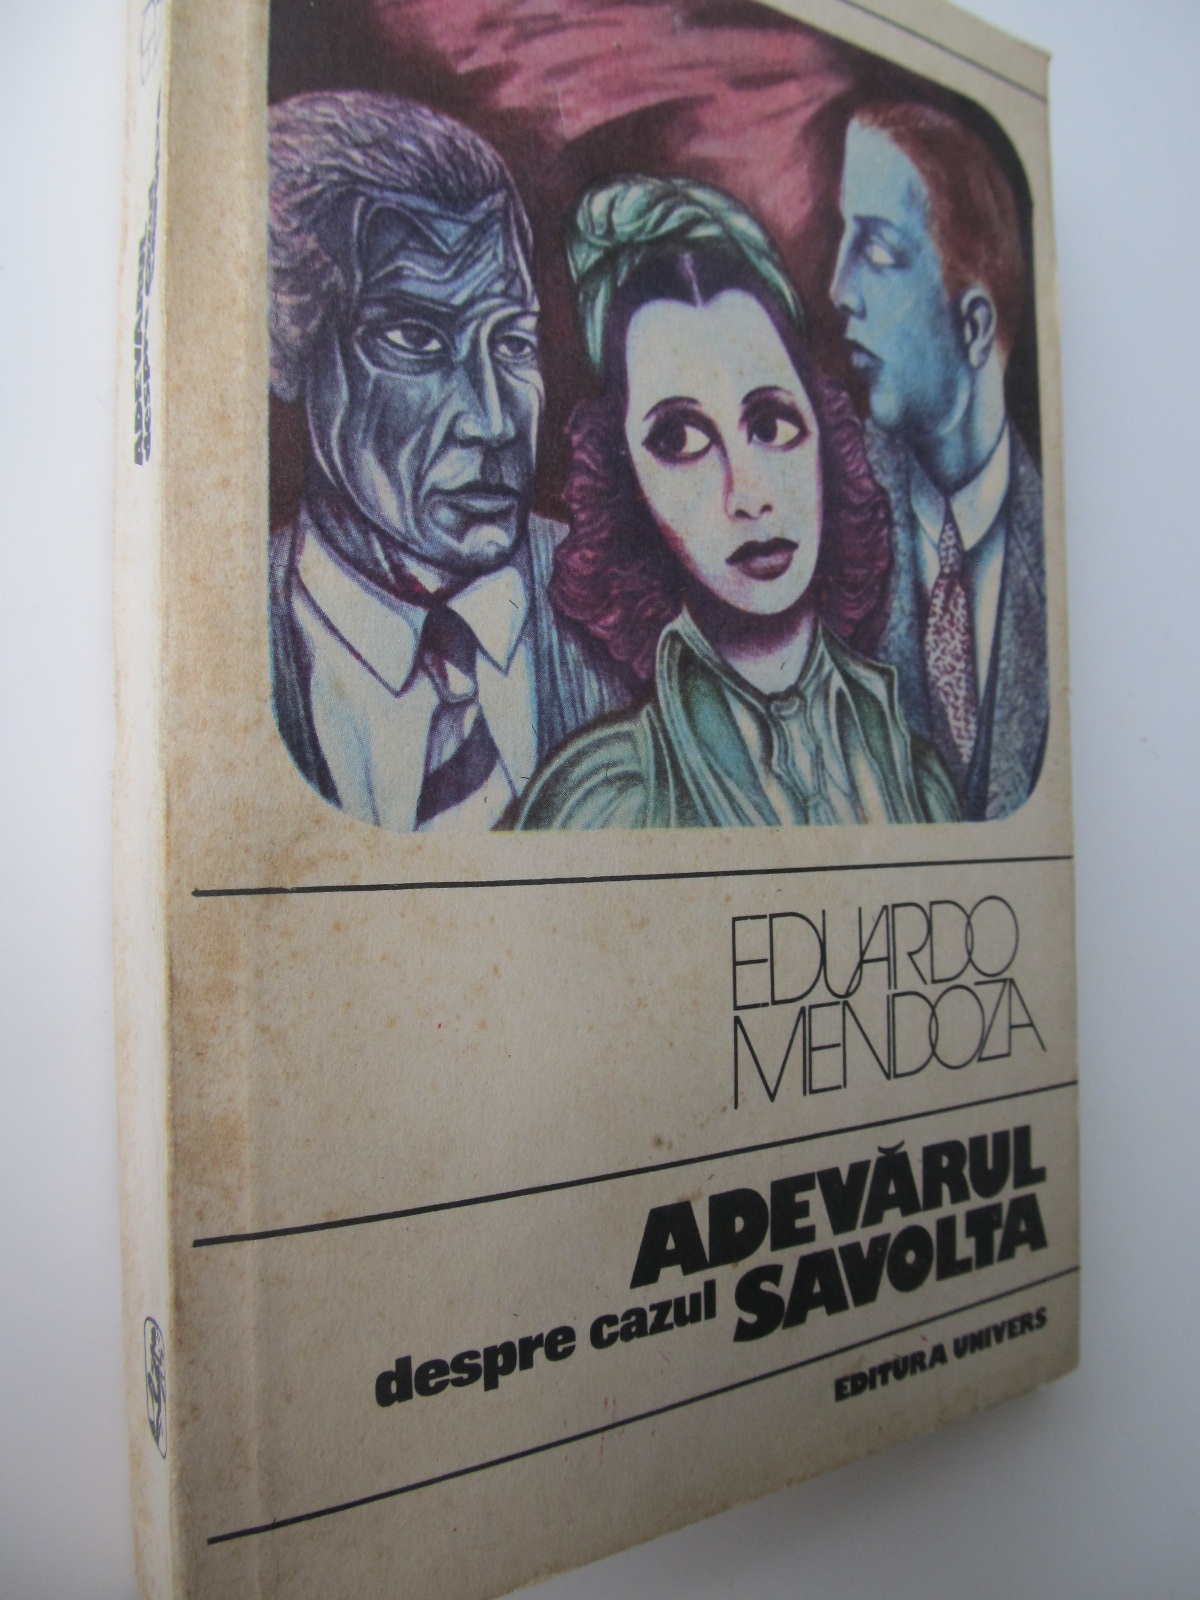 Carte Adevarul despre cazul Savolta - Eduardo Mendoza